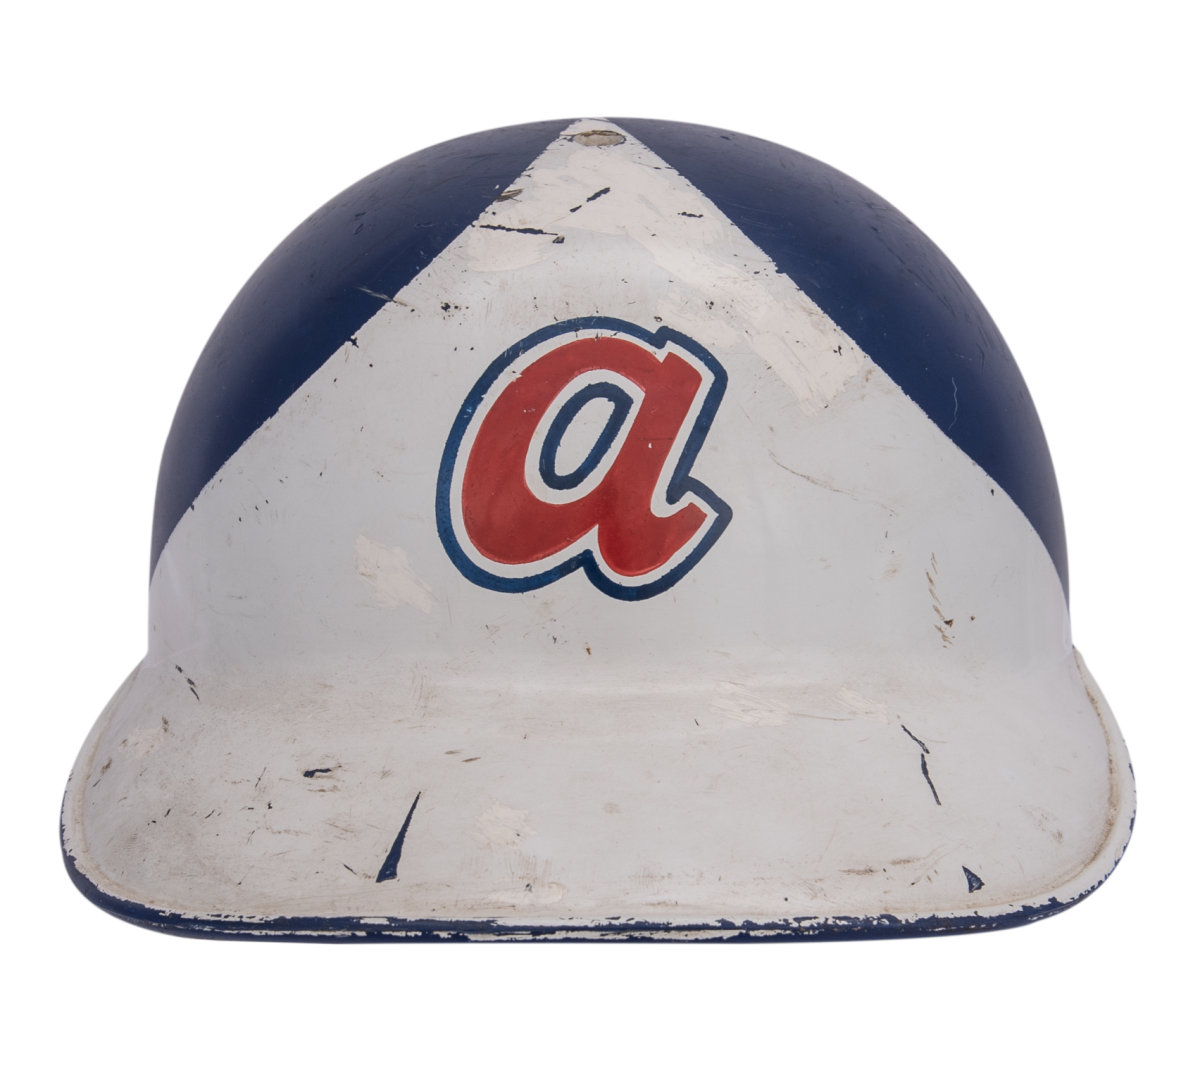 Hank Aaron's 1974 batting helmet worn when he hit his record-tying 714th home run.